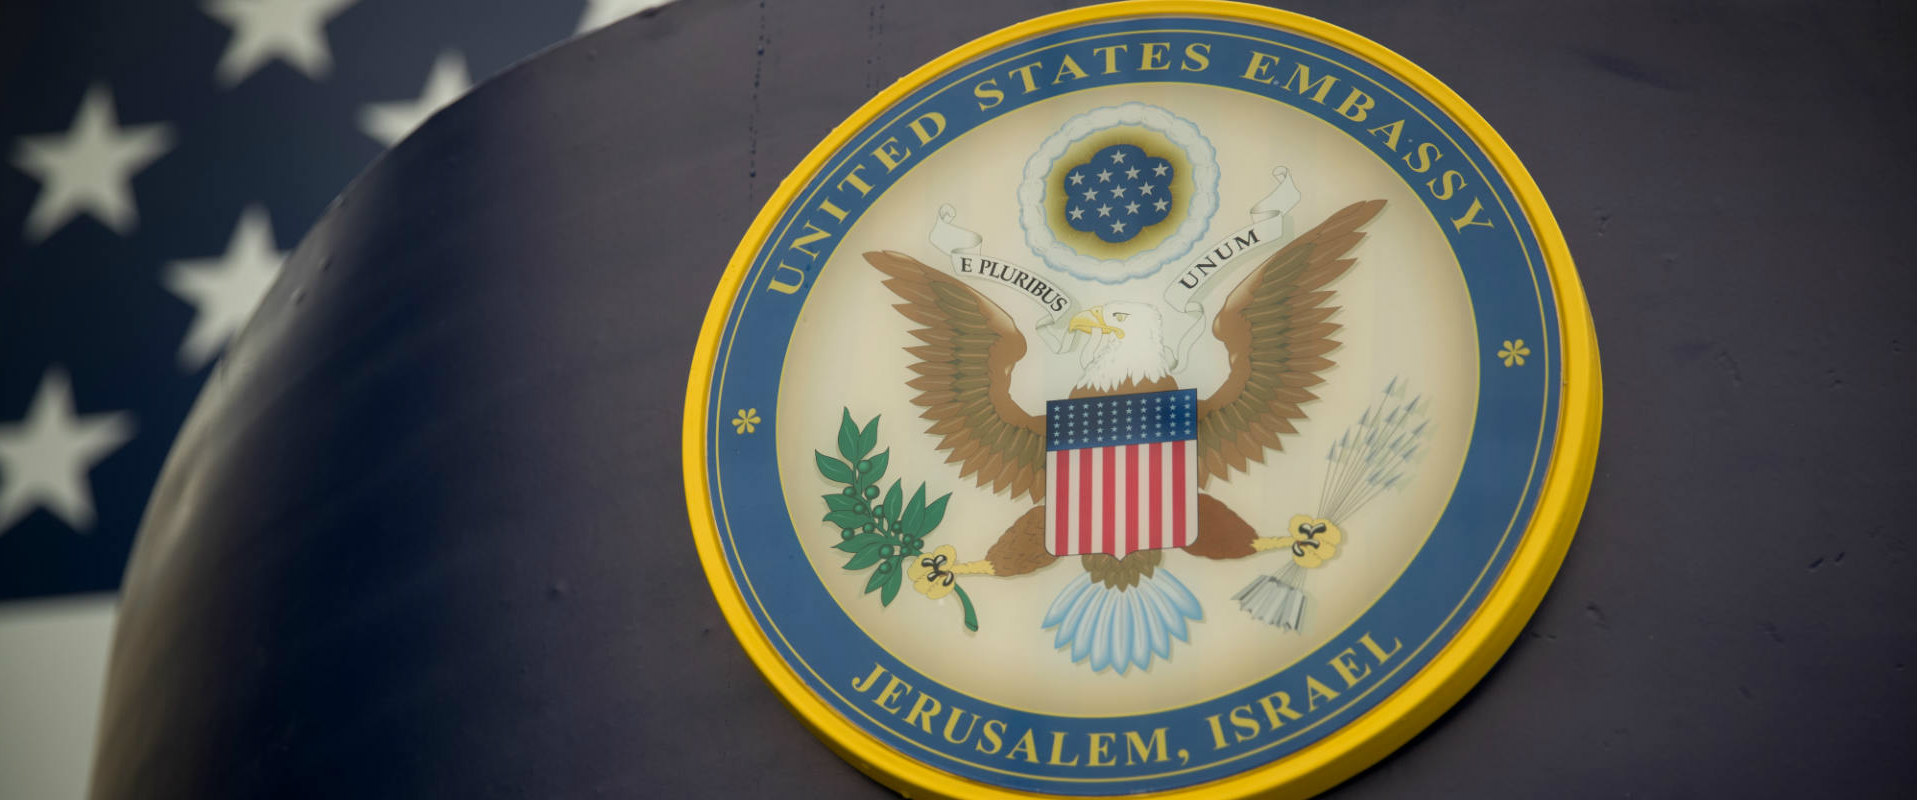 שגרירות ארצות הברית בירושלים